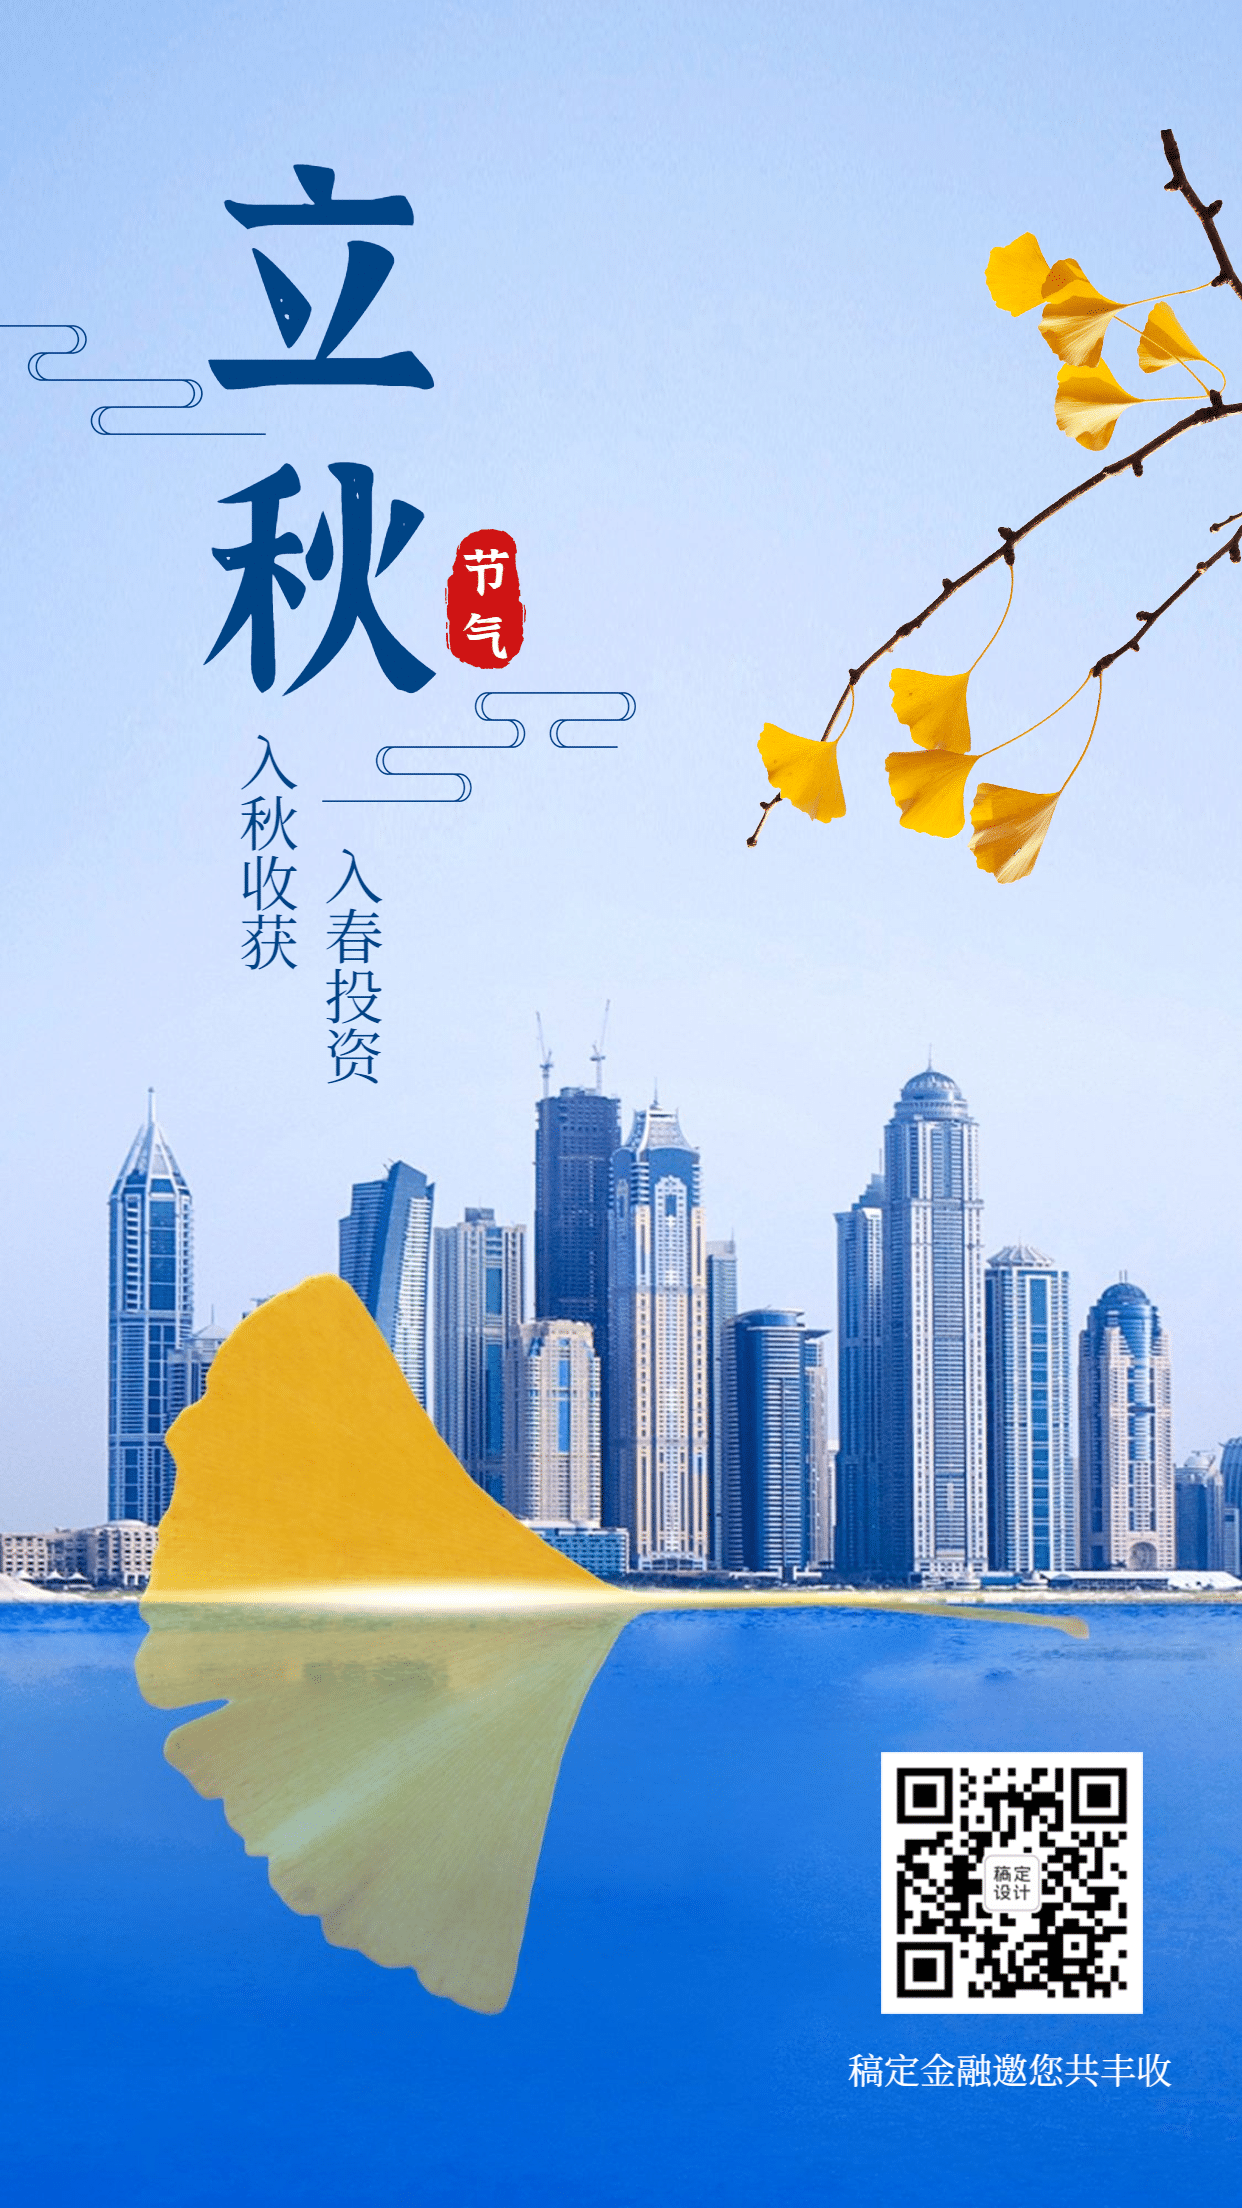 金融保险立秋节日节气商务风手机海报